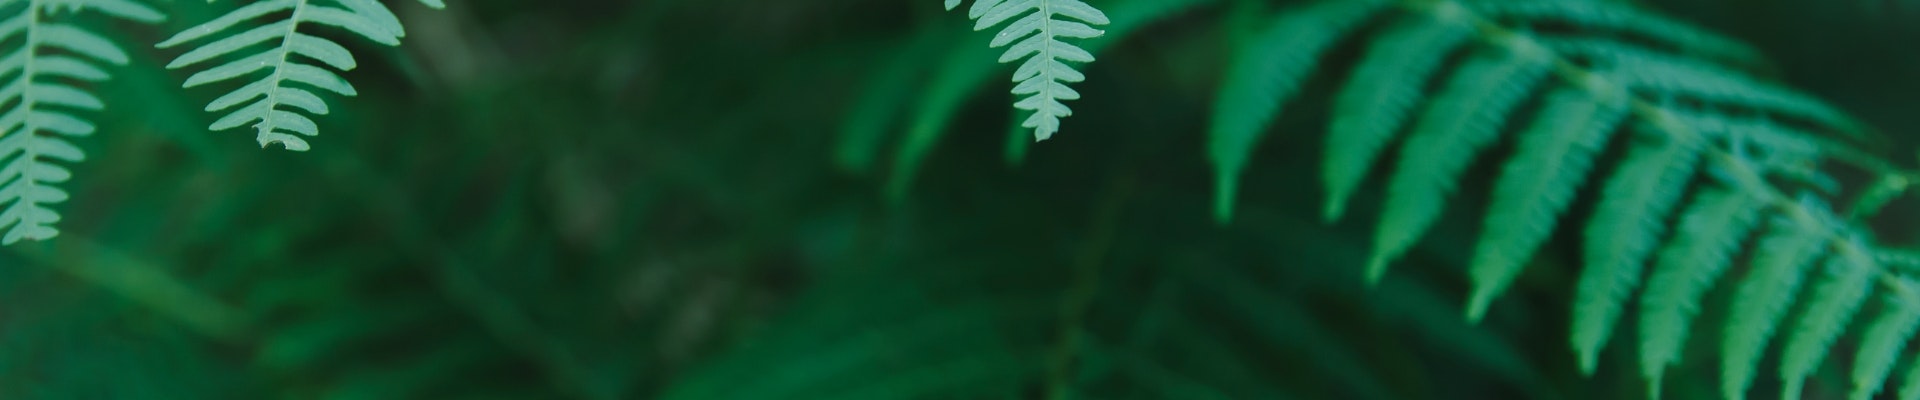 image of fern leaf